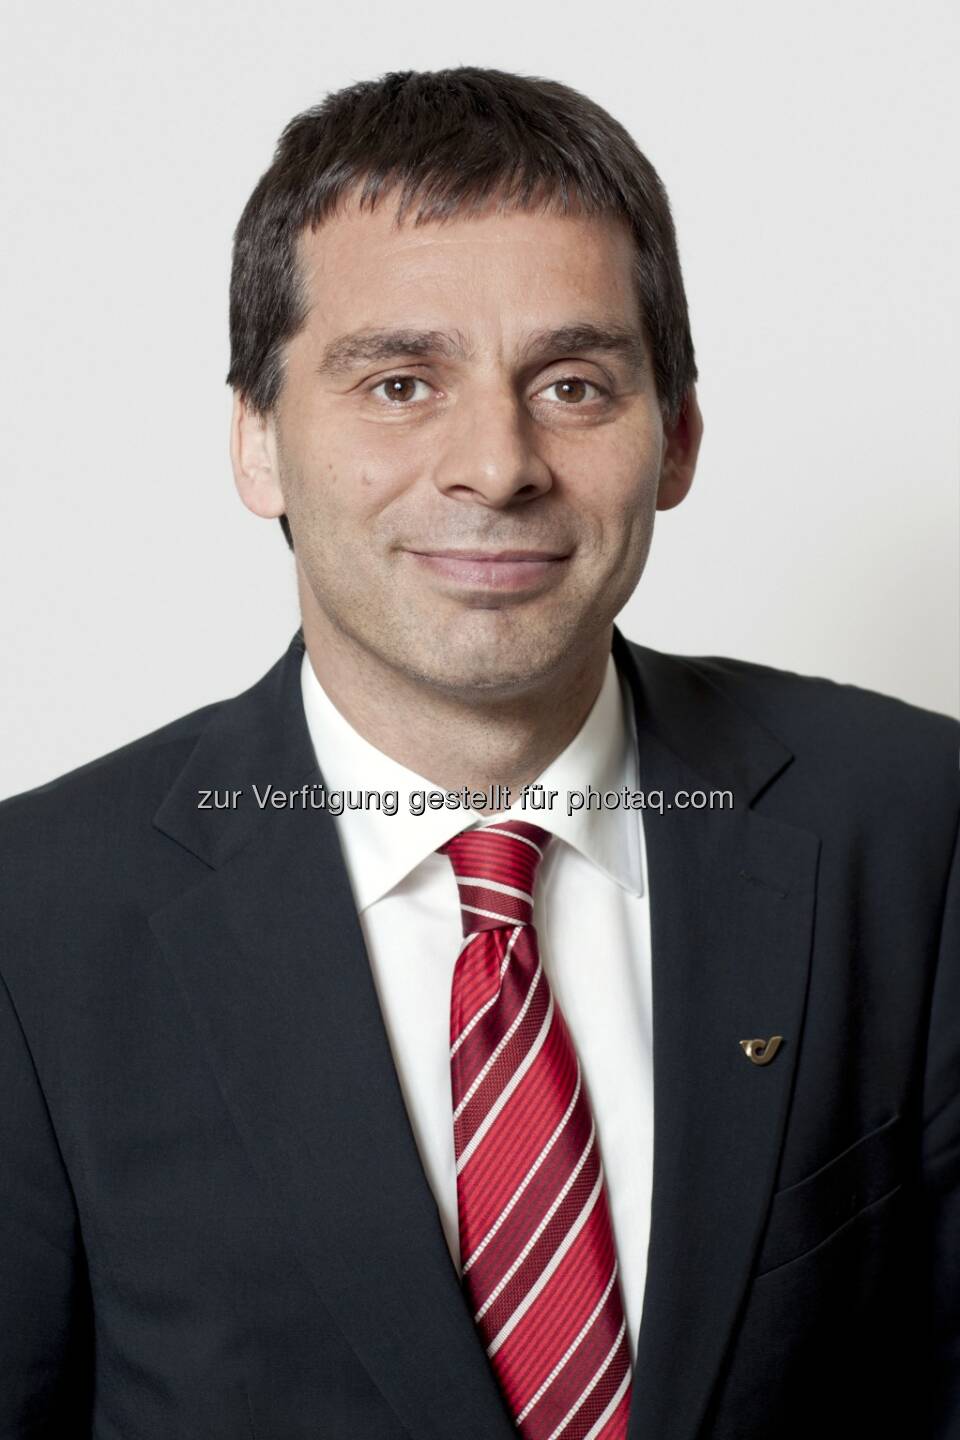 Peter Umundum zum Vorstand Paket & Logistik der Österreichischen Post AG wiederbestellt